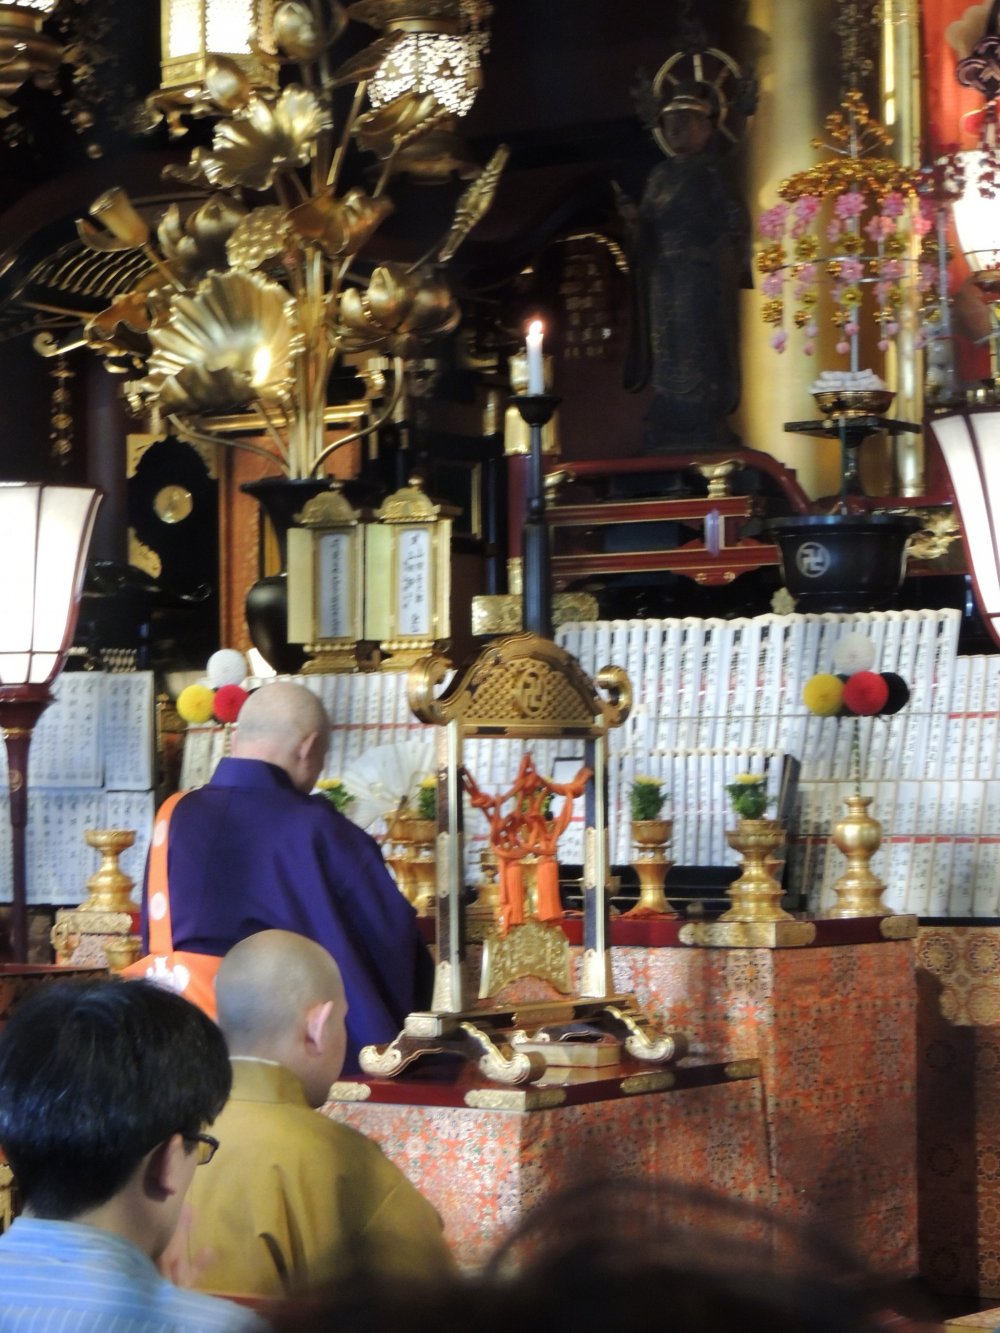 Les moines Bouddhistes au sein du temple Sensō-ji